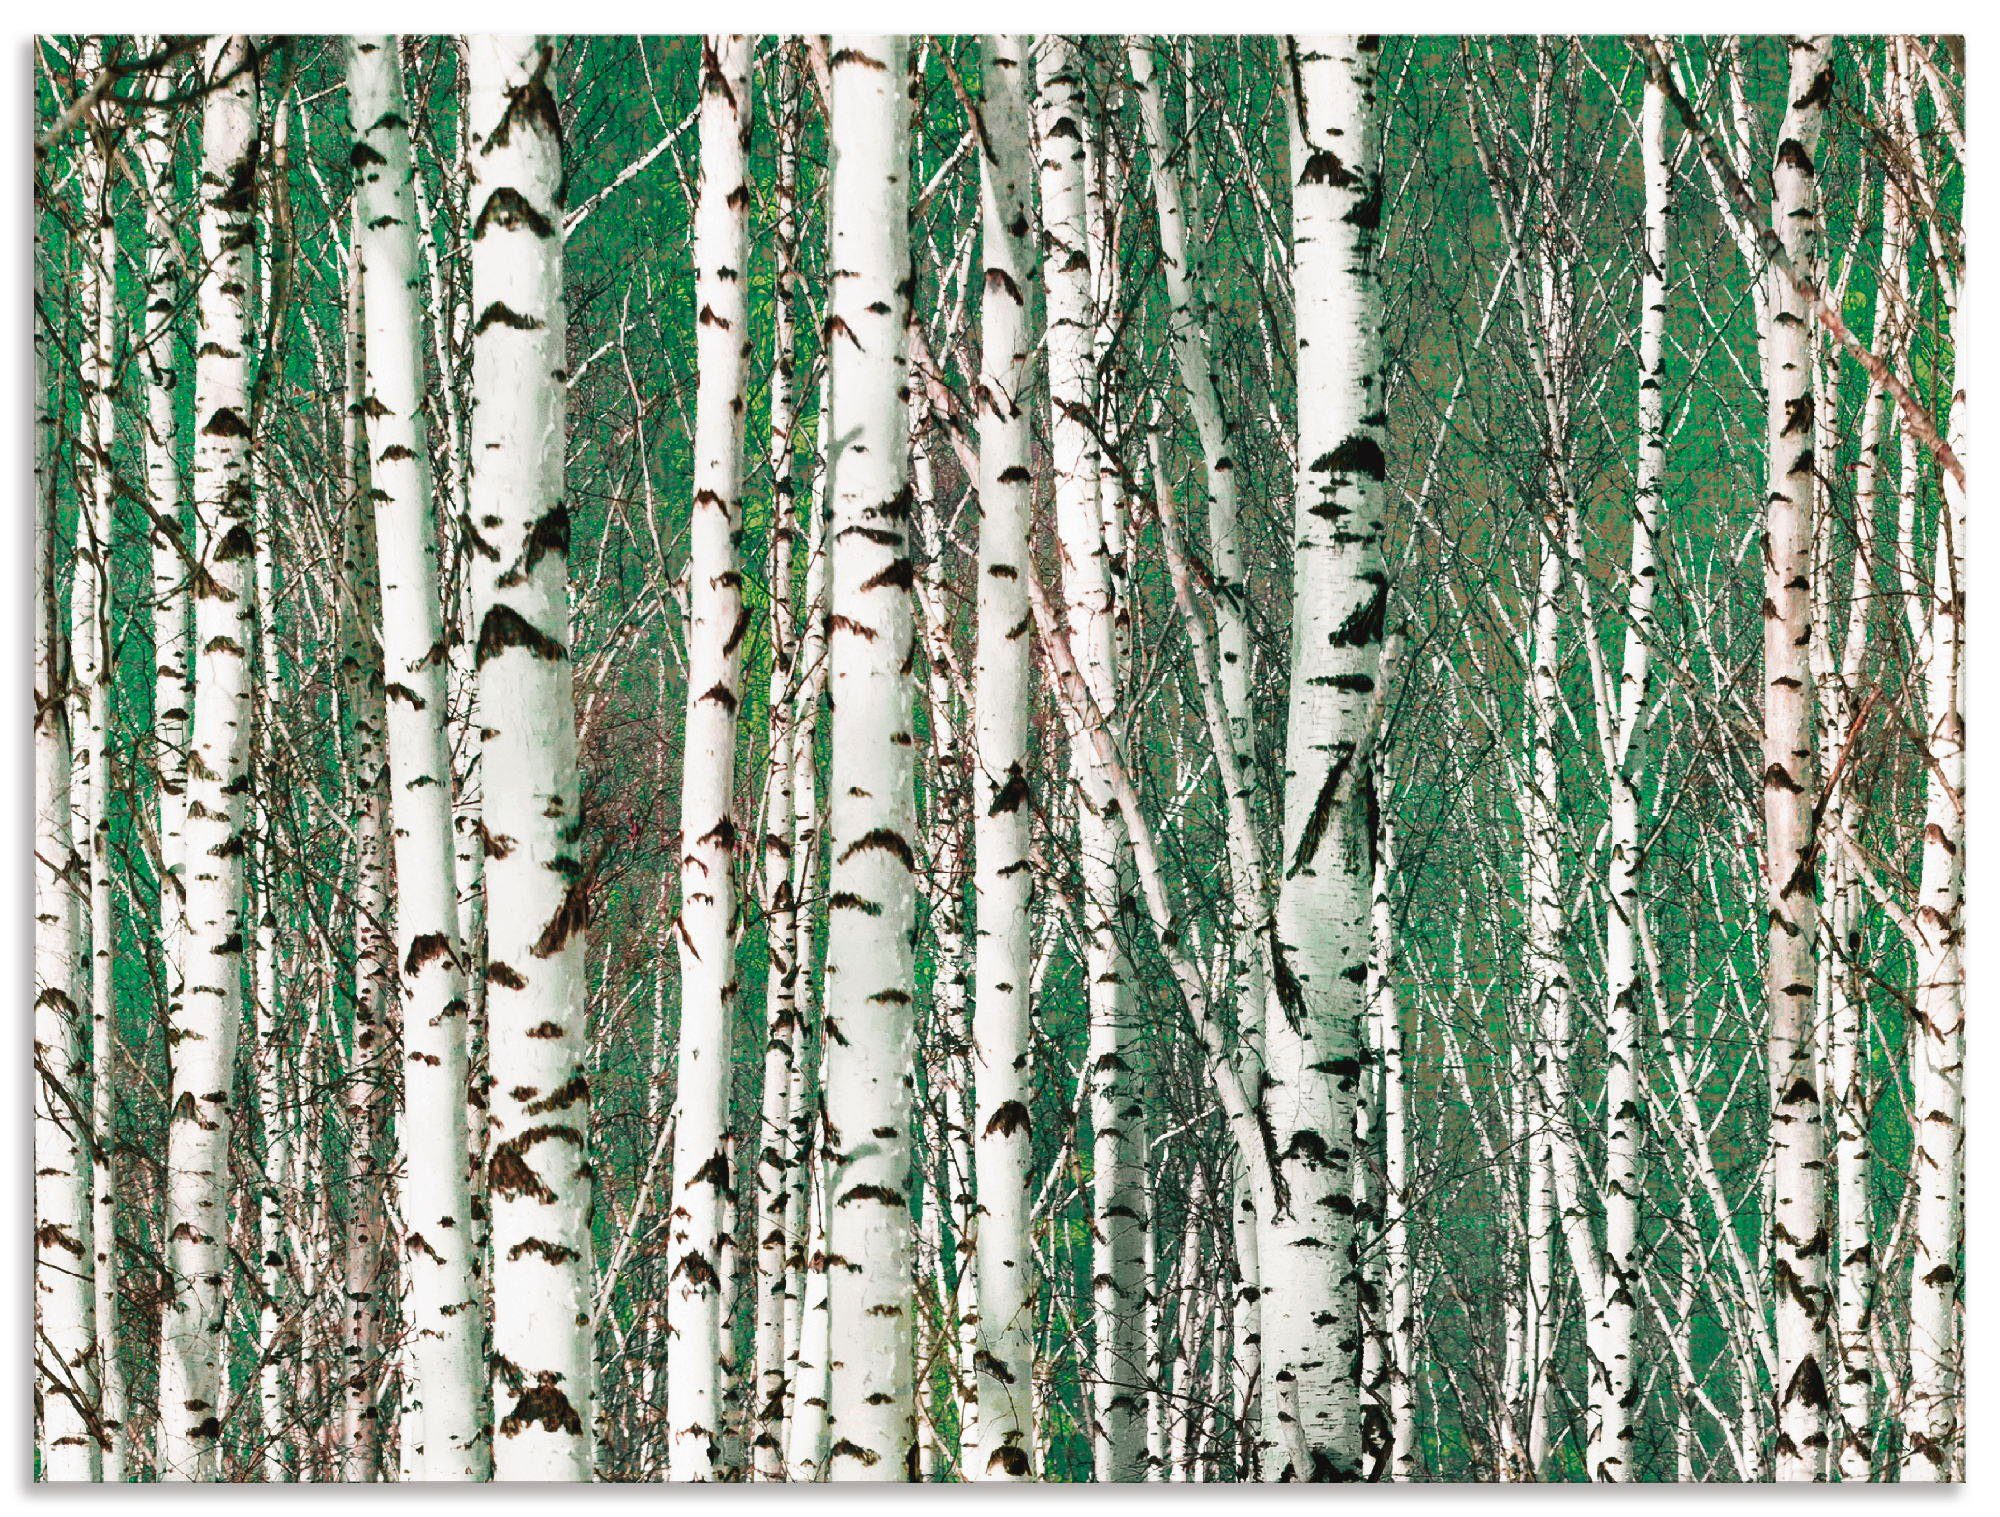 Artland Artprint Berkenbos - bomen in vele afmetingen & productsoorten - artprint van aluminium / artprint voor buiten, artprint op linnen, poster, muursticker / wandfolie ook gesc